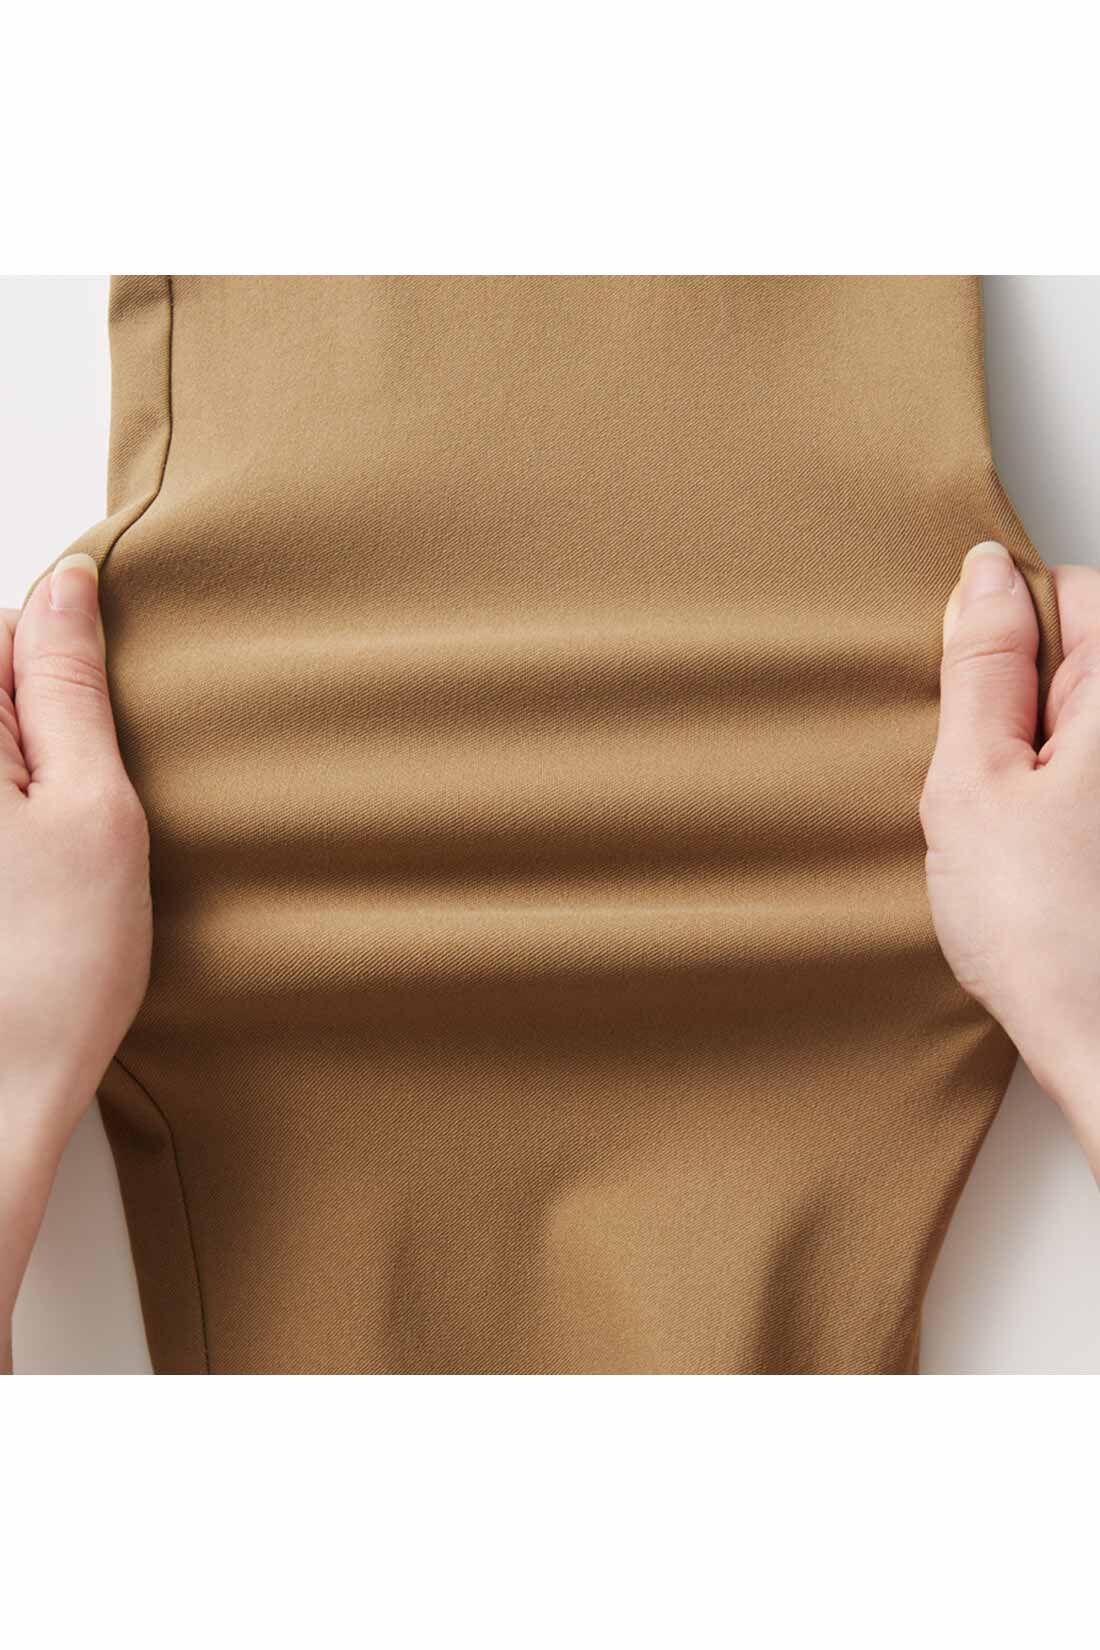 IEDIT[イディット]　ウエストメッシュで快適 ストレッチ布はく素材の美脚レギンスパンツ〈ブラック〉|からだの動きに合わせて、しなやかに伸びるからノンストレス。